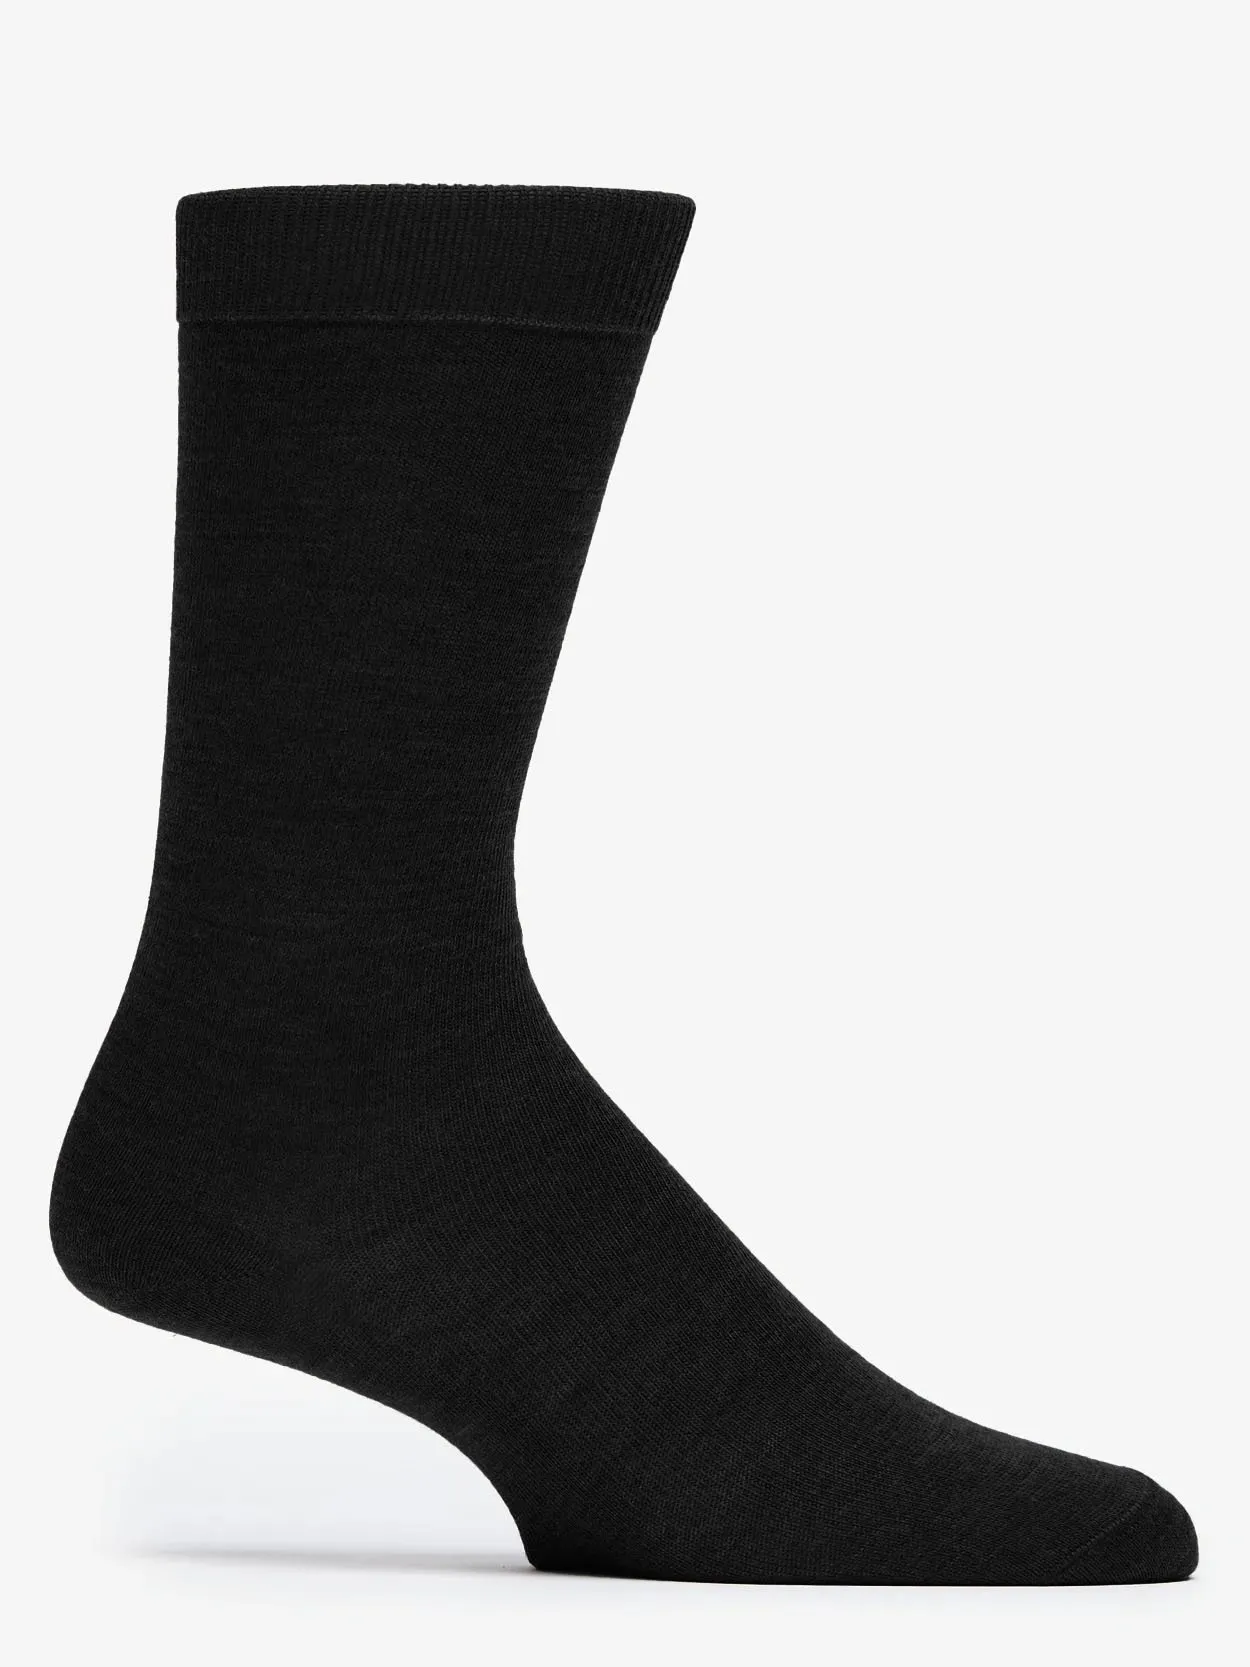 Black Socks Tully